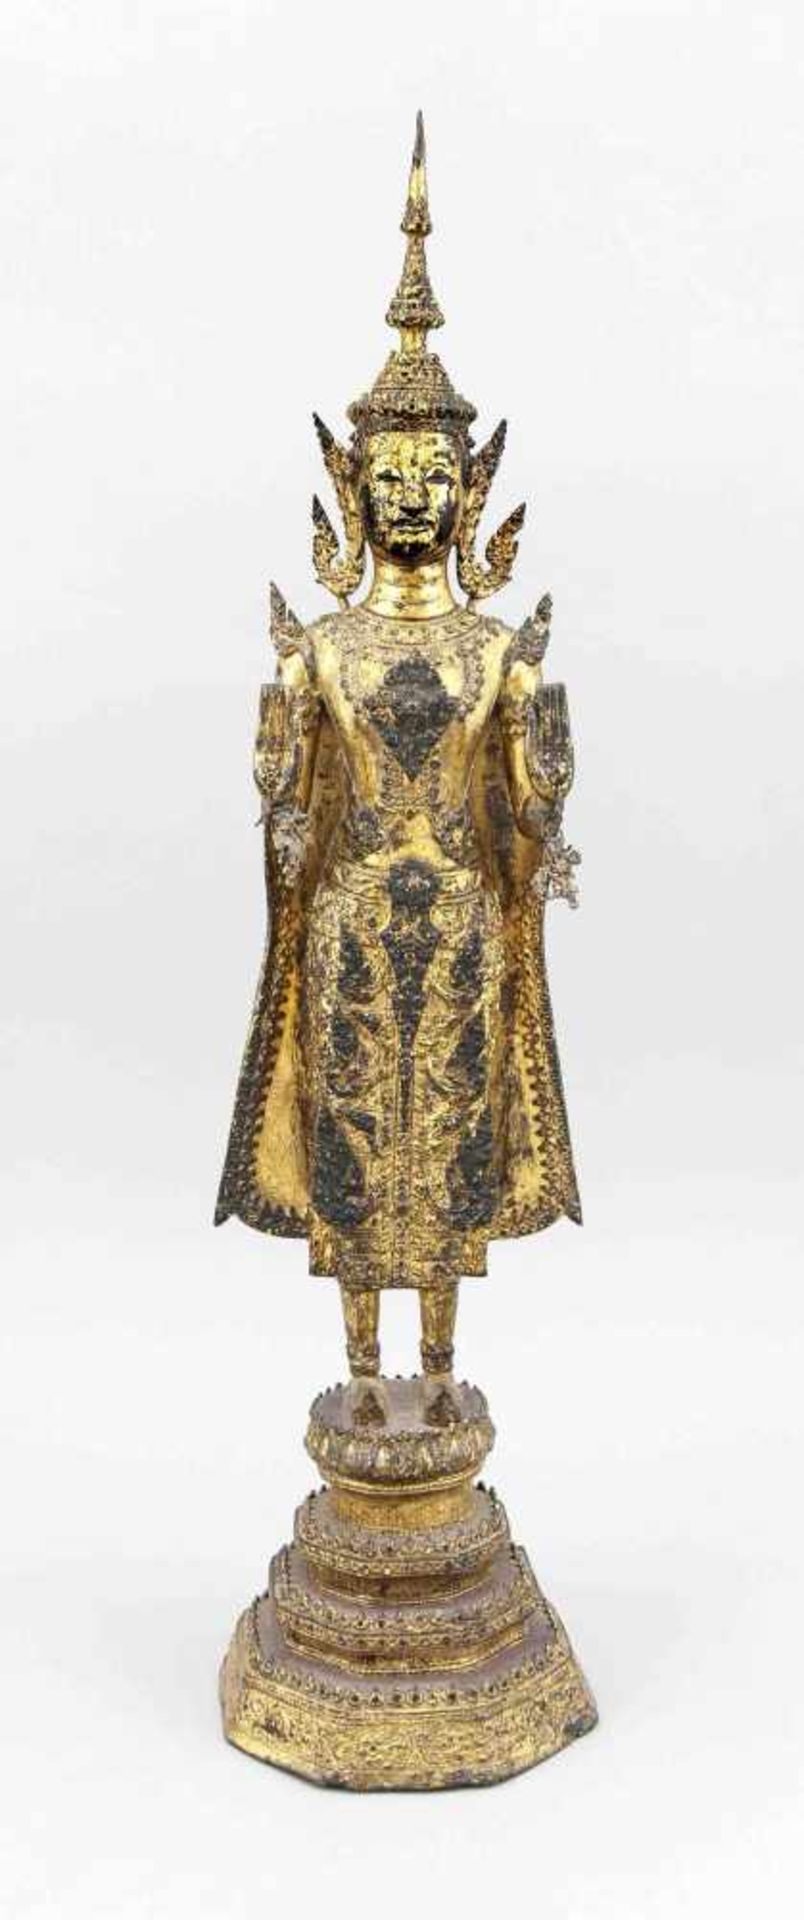 Stehender Buddha (Rattanakosin), Thailand, um 1900, Bronze reich vergoldet. Mehrstufiger,octogonaler